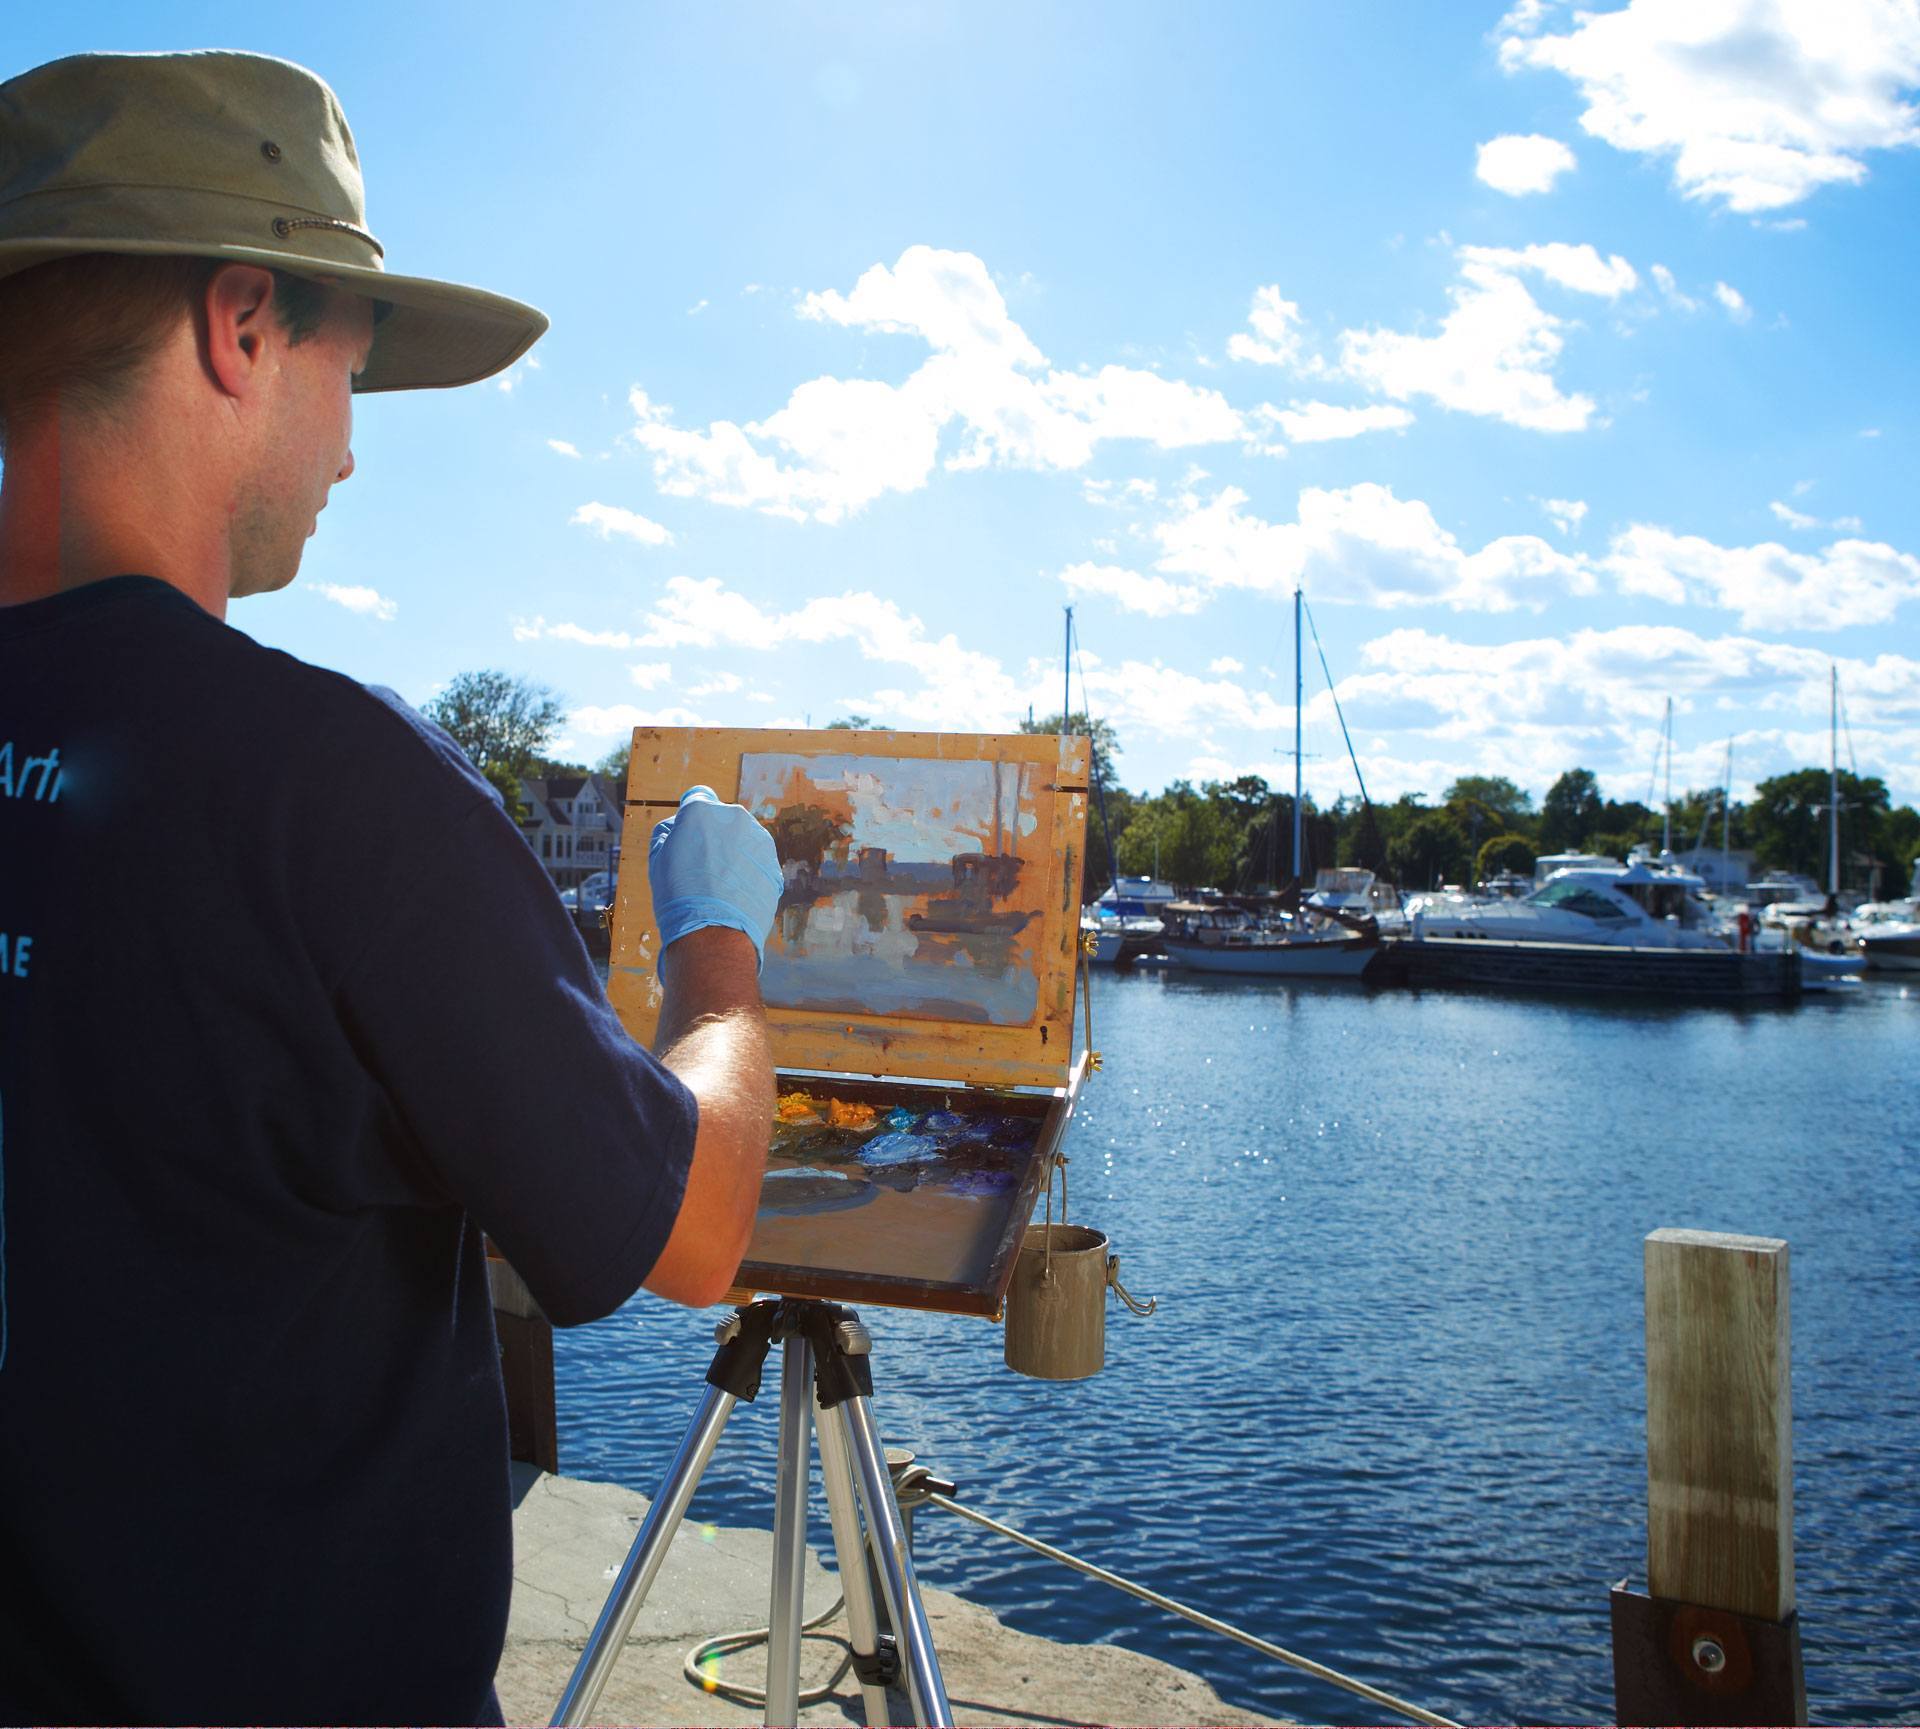 A man painting at the marina